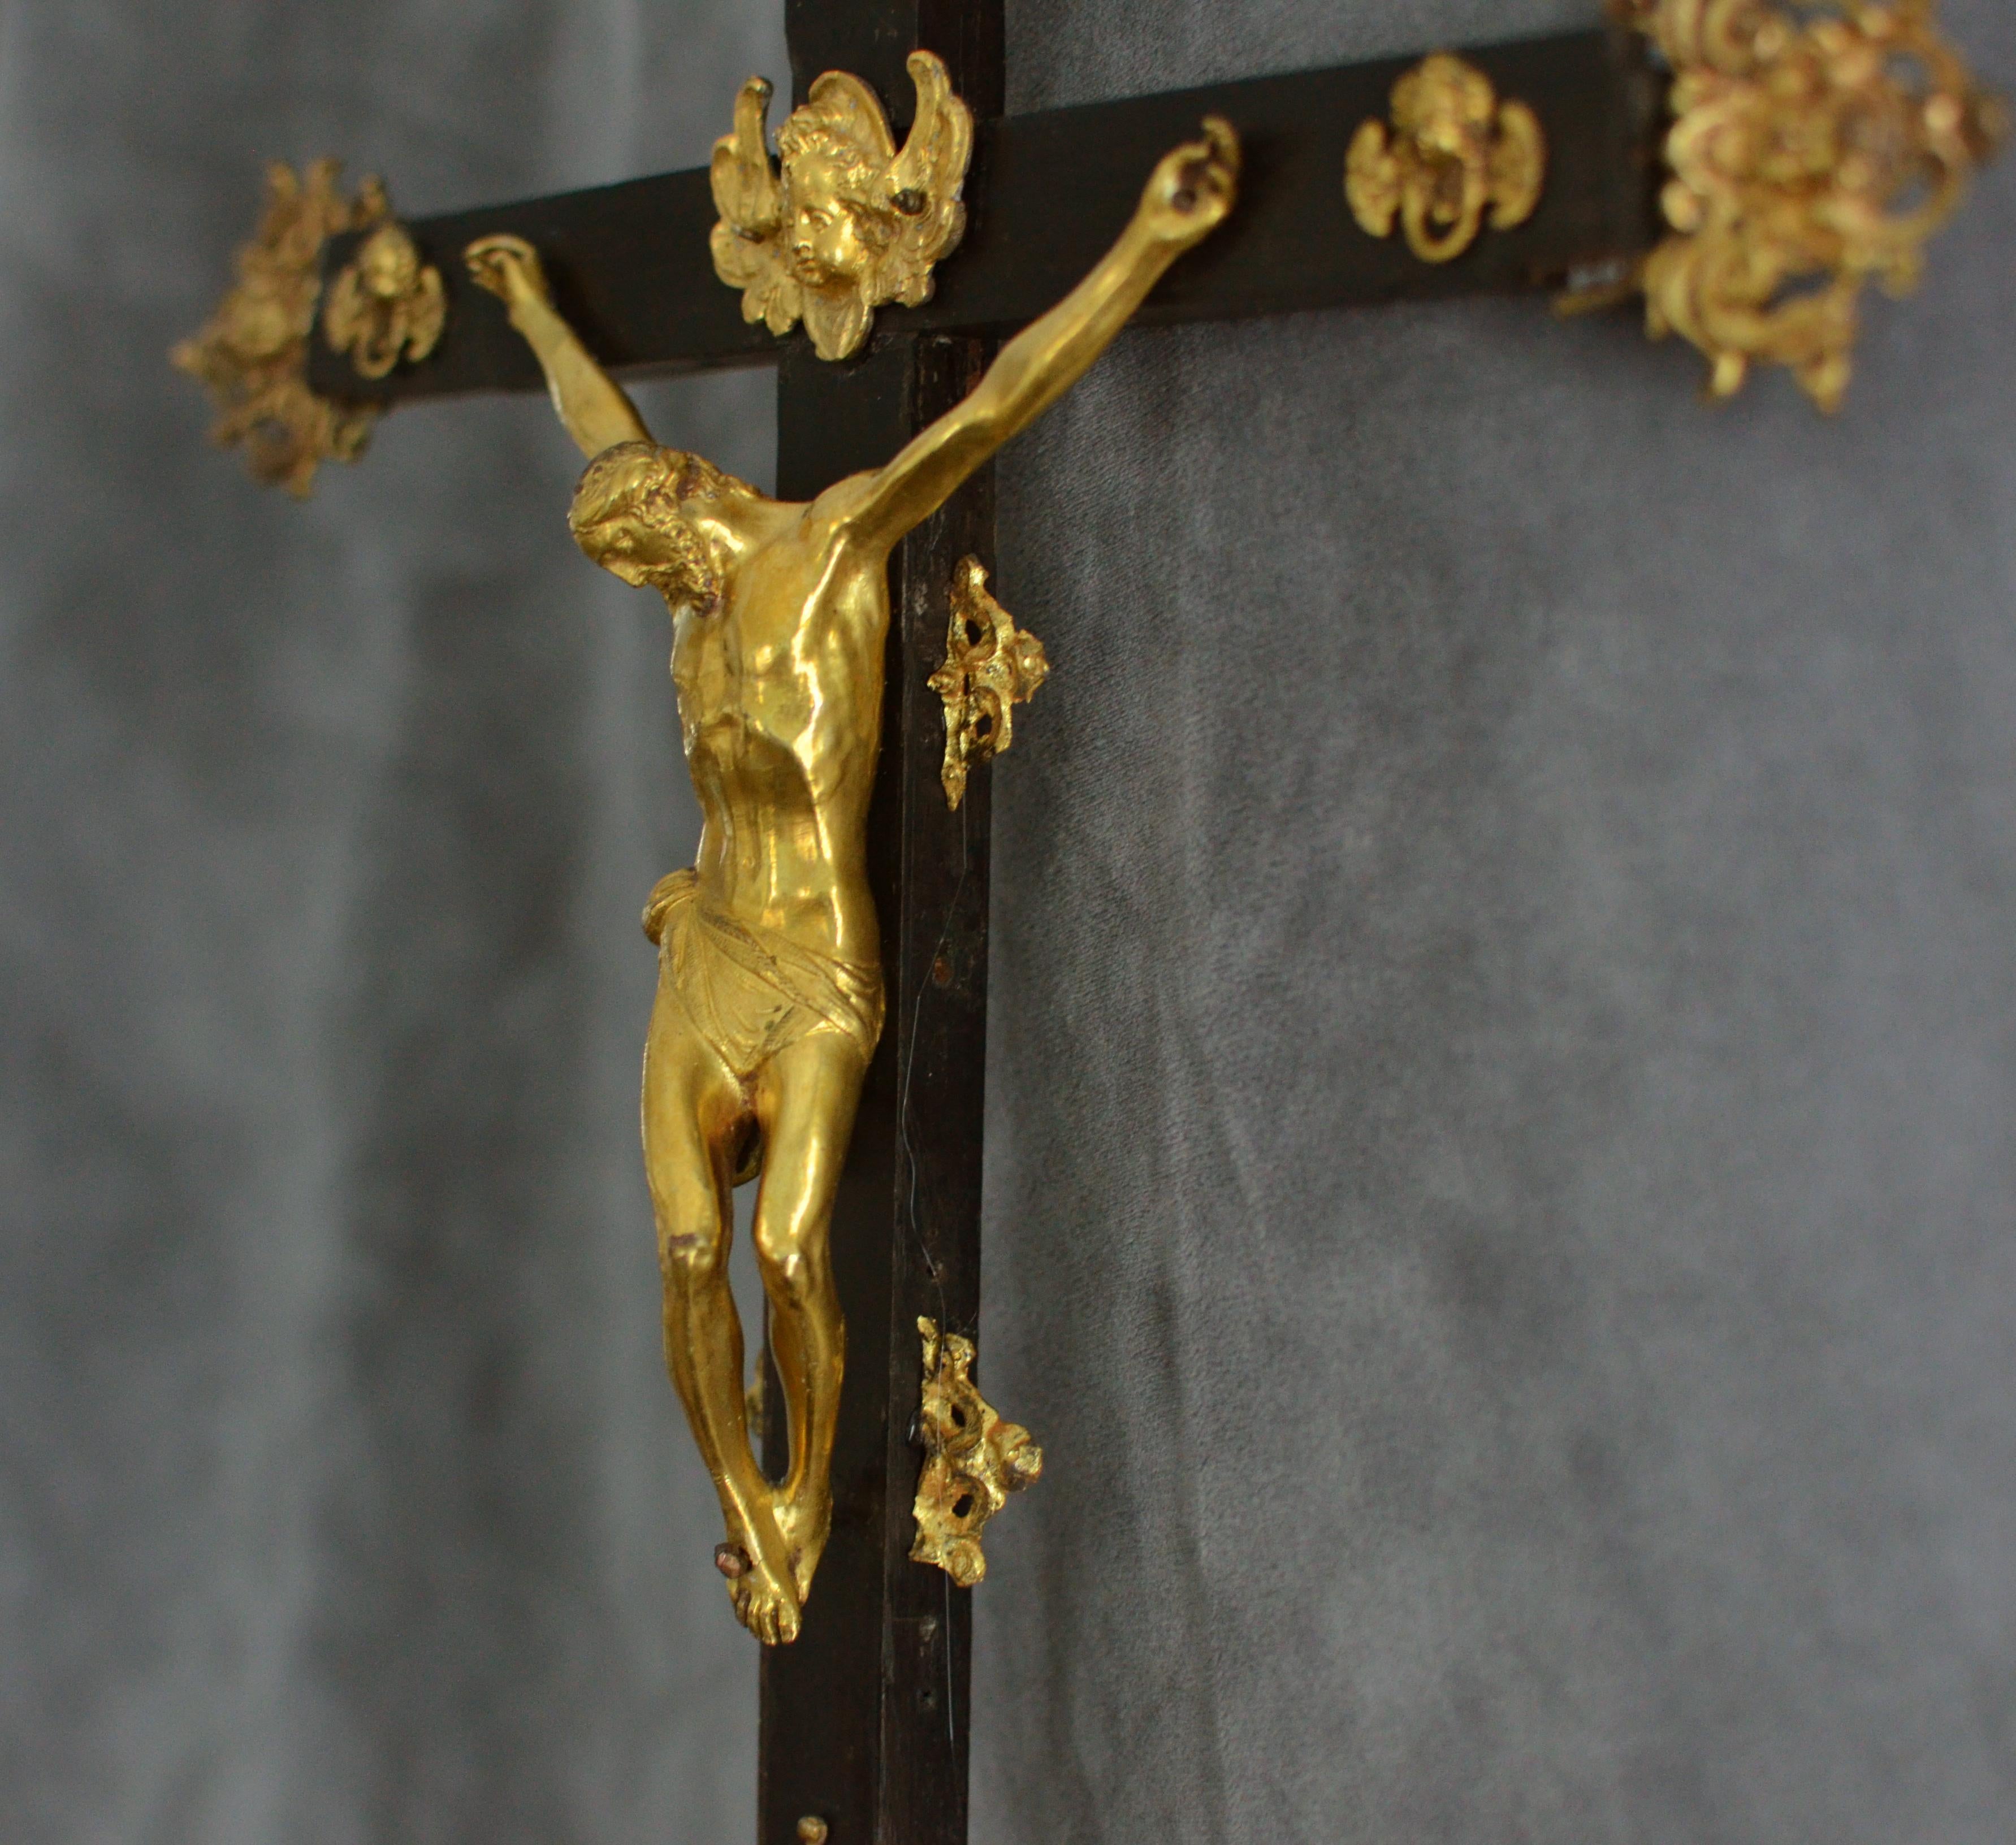 Croix d'autel romain du XVIIe siècle d'après Guglielmo della Porta

Dimensions approximatives : 67 x 27 cm

La croix d'autel actuelle, probablement d'origine italo-romaine, reproduit une figure du Christ en bronze doré, coulée d'après un modèle